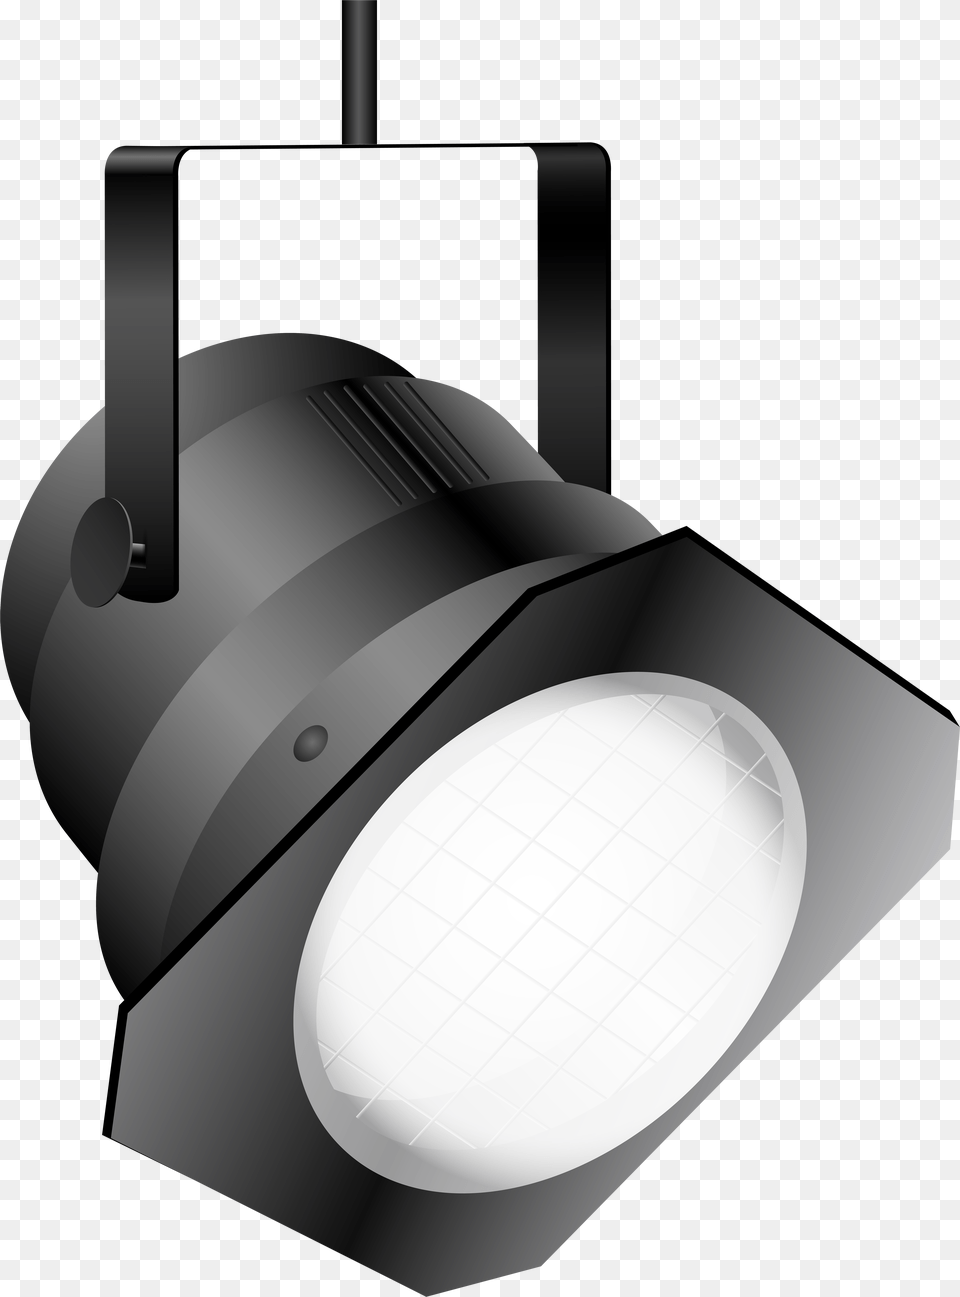 White Spotlight Clip Art, Lighting, Lamp Png Image